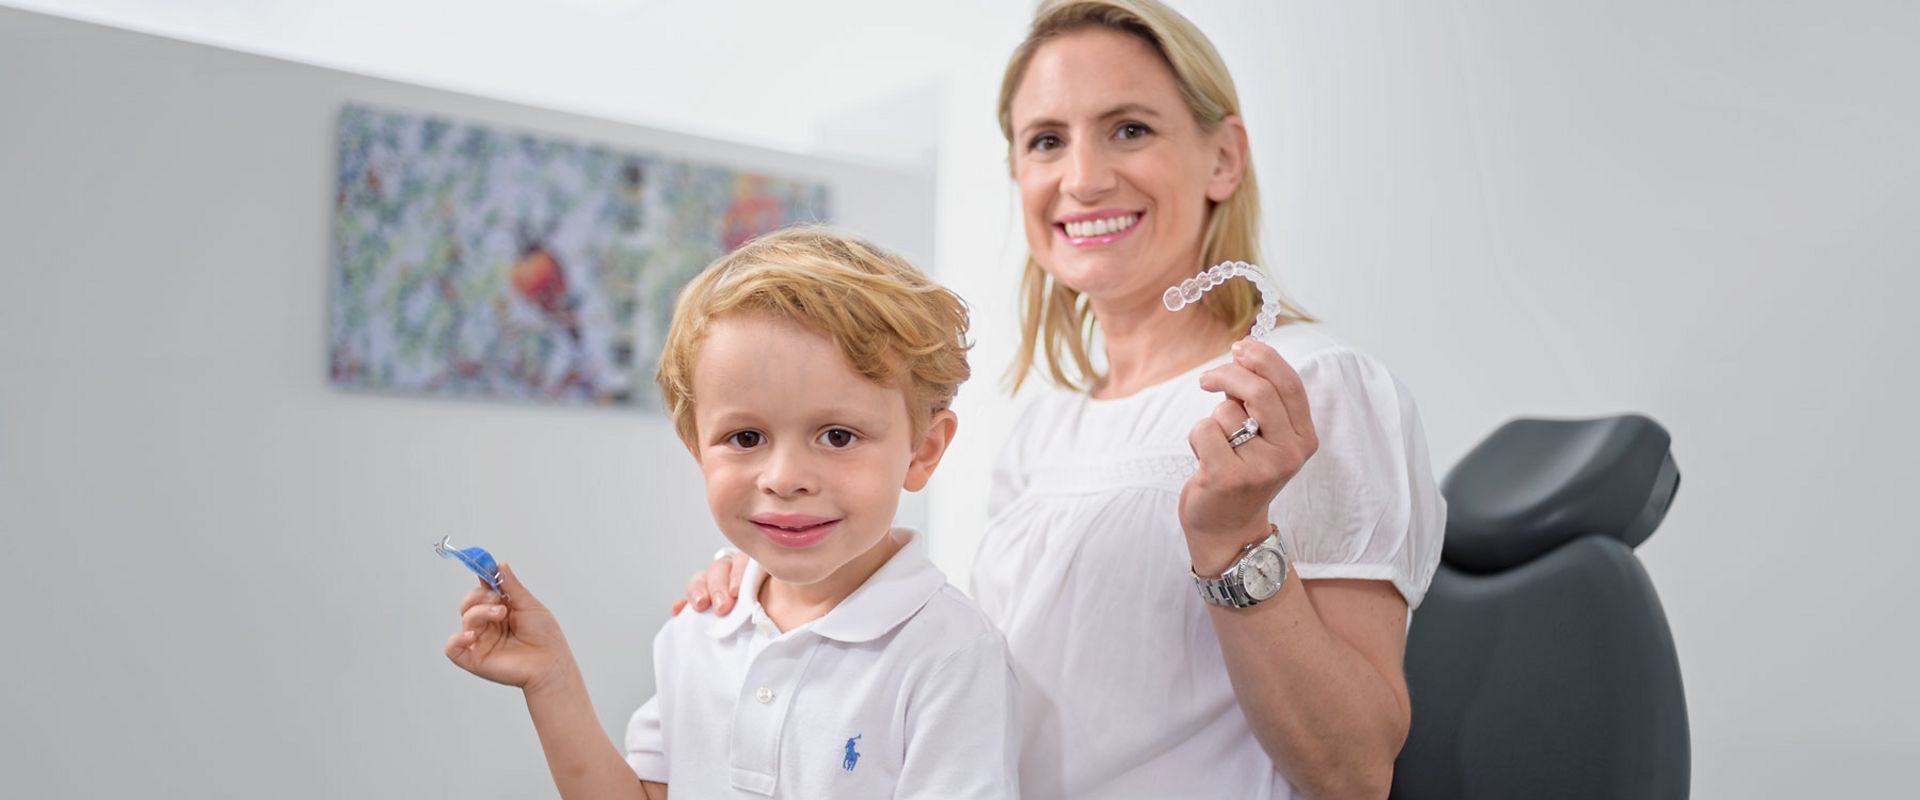 Enfant et adulte en consultation orthodontique